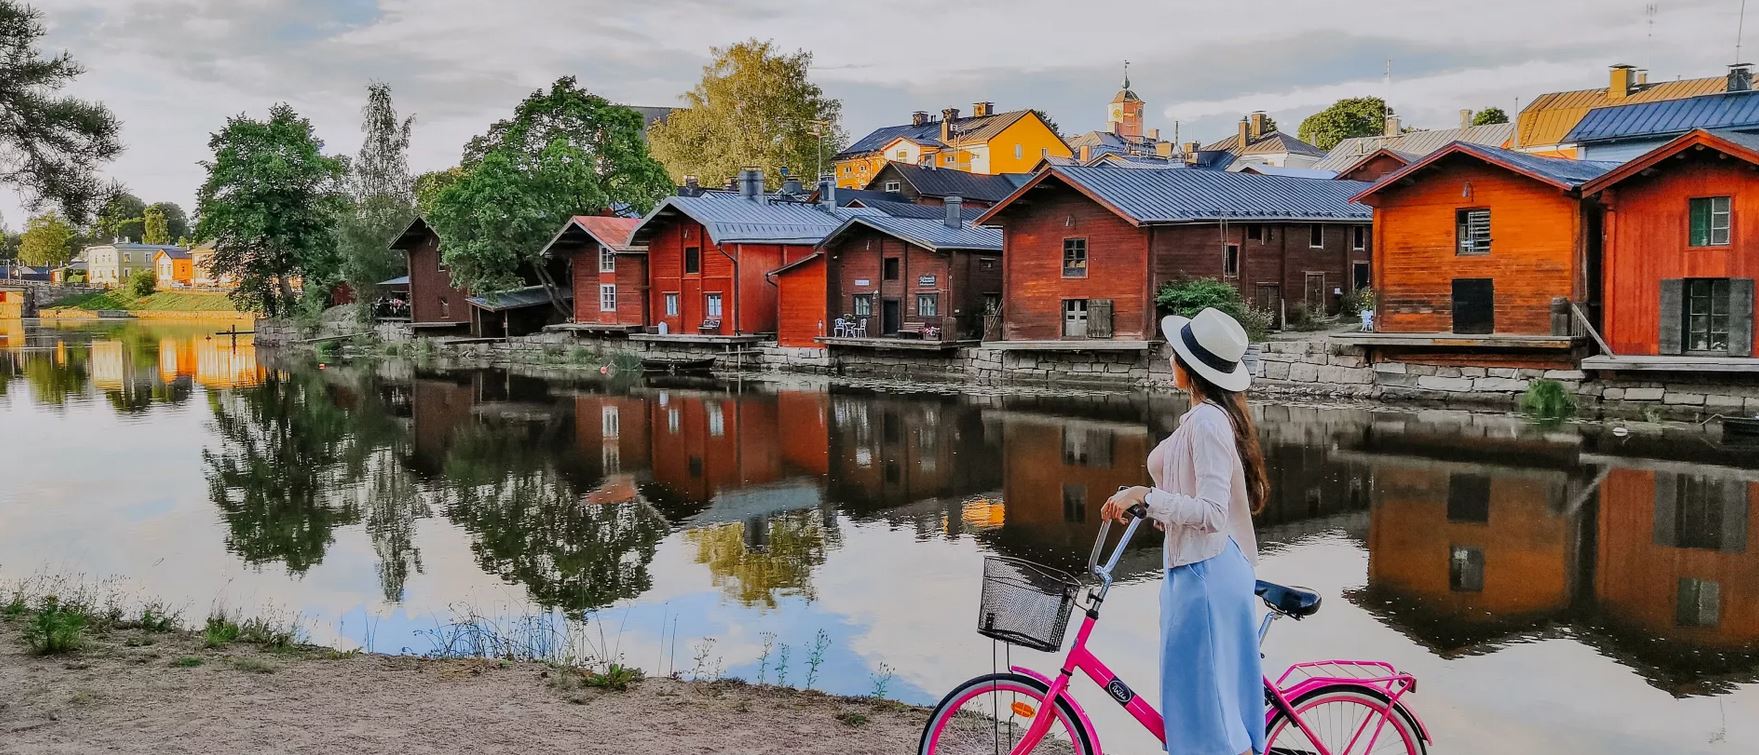 Häuser in Finnland mit Radfahrerin